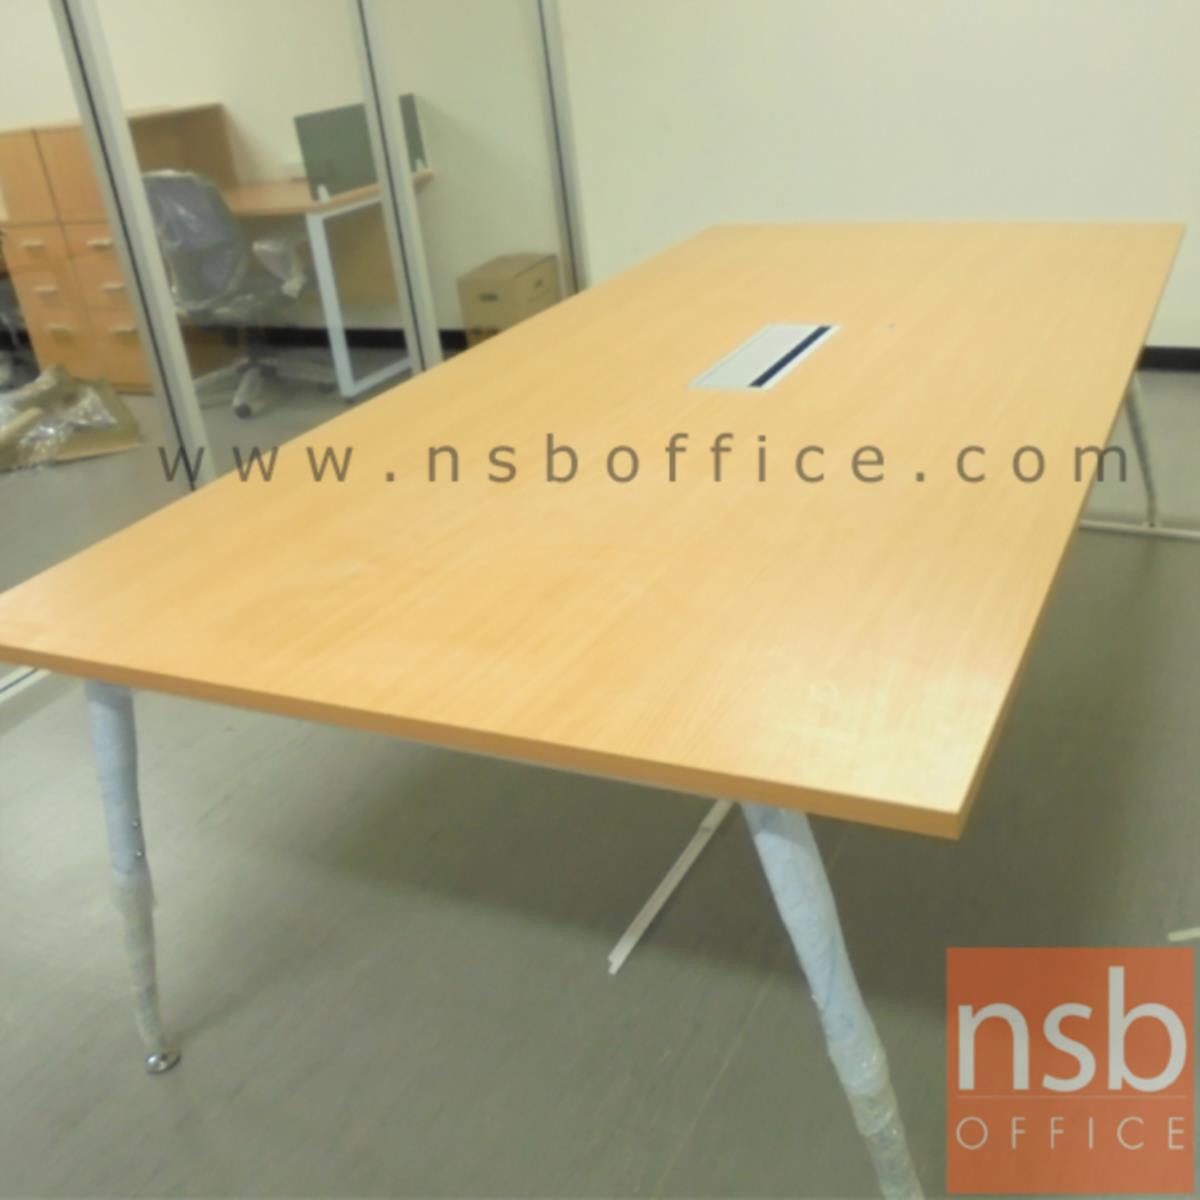 โต๊ะประชุมทรงสี่เหลี่ยม  ขนาด 150W, 180W, 200W, 240W cm.  ขาเหล็กปลายเรียว 